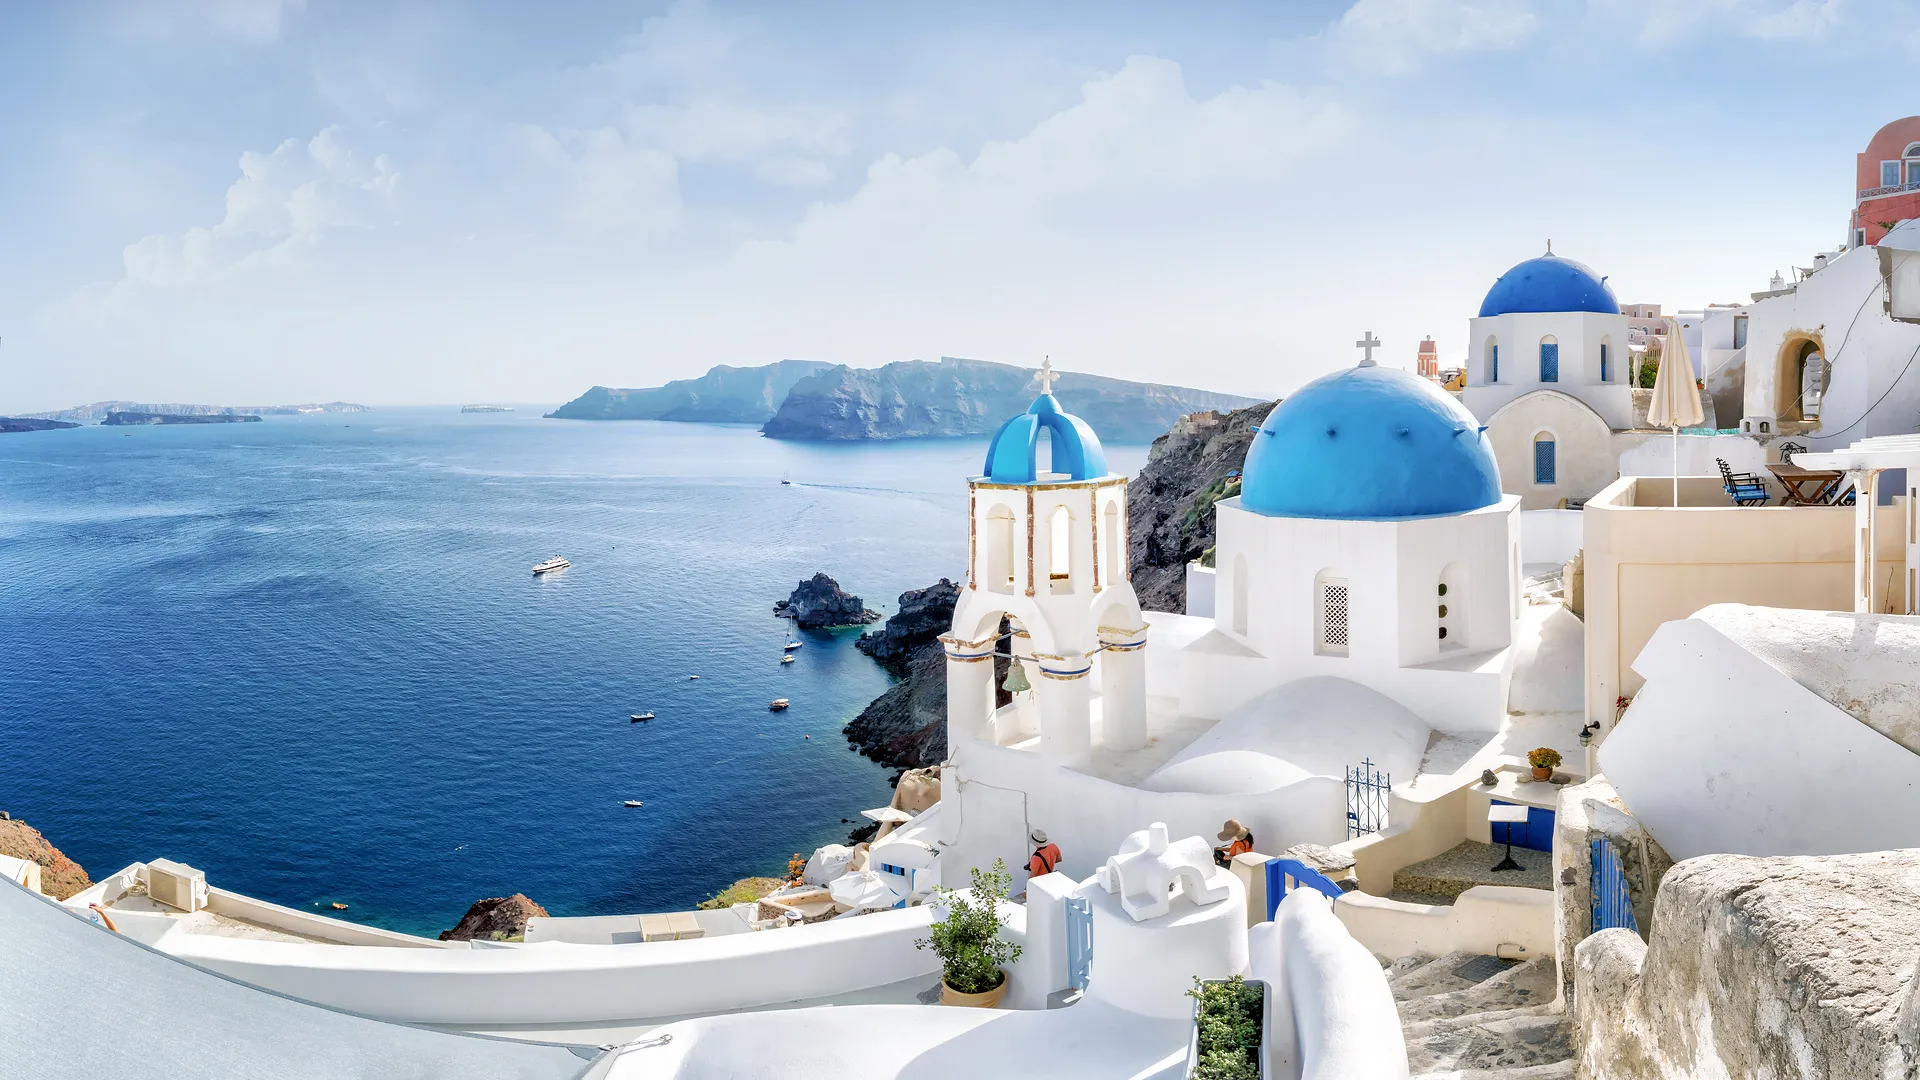 Pauschalreisen nach Griechenland background image